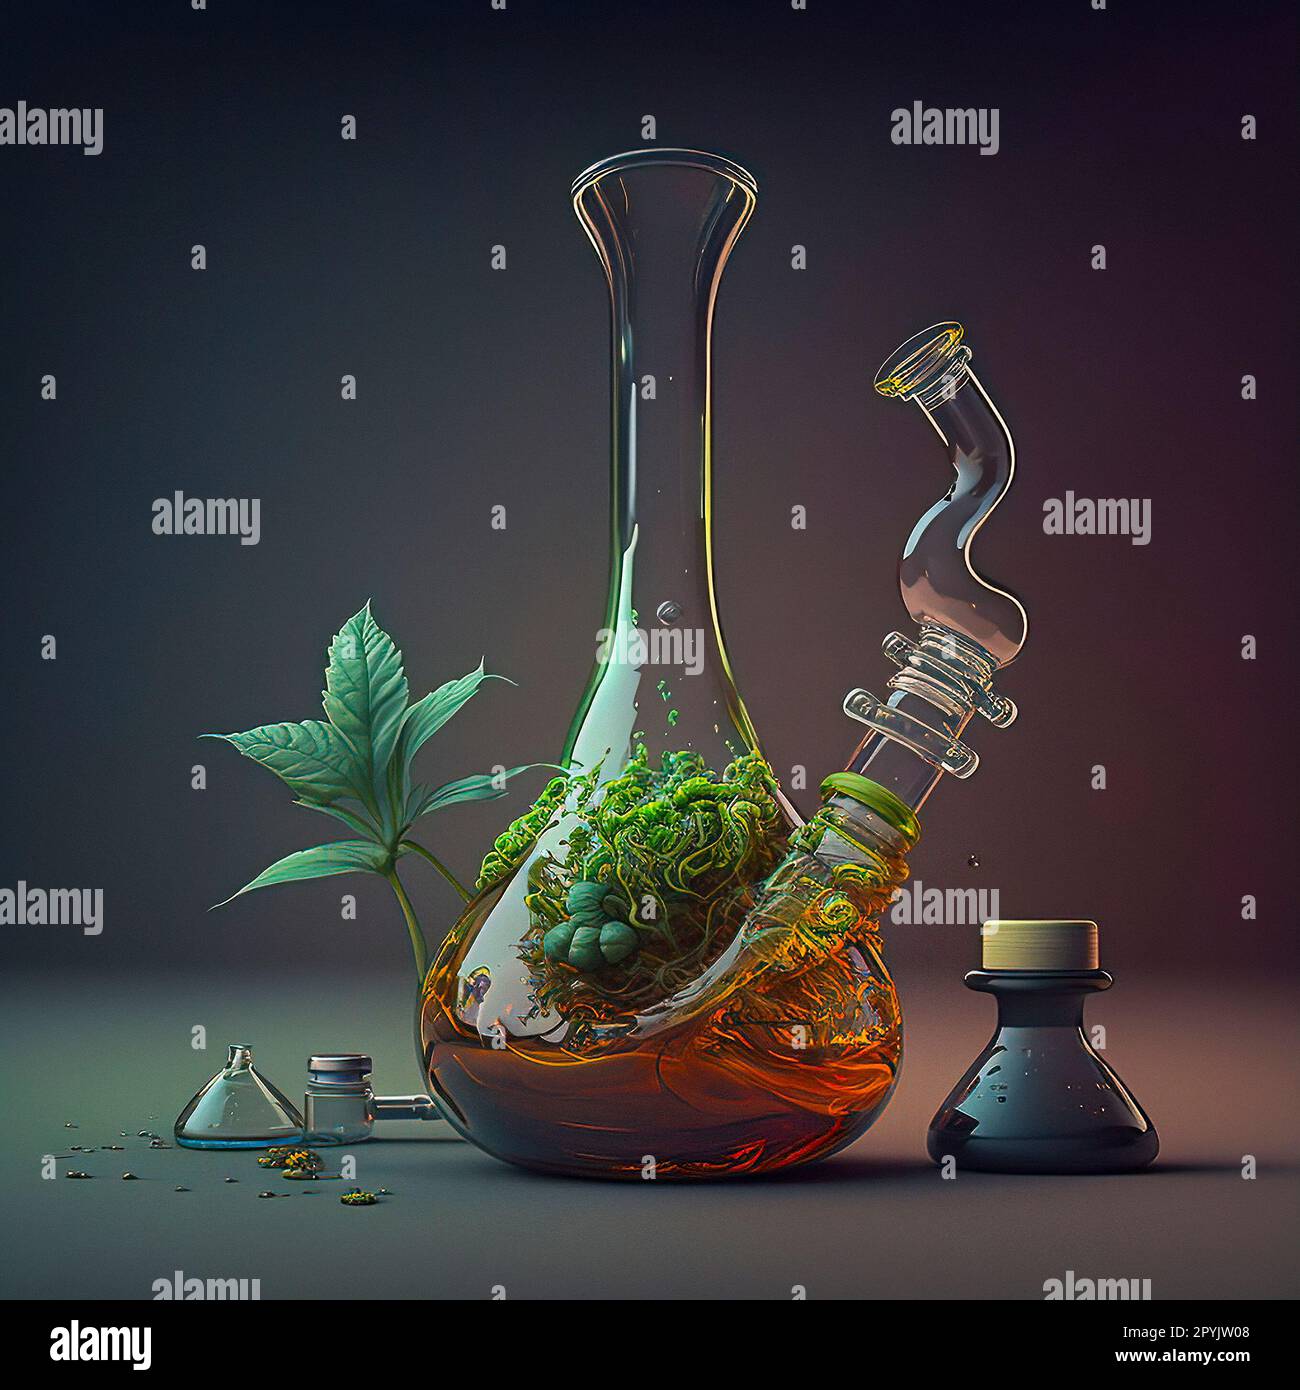 Un magnifique Biopunk Art of a Glass Bong rempli d'une potion magique de couleur orange et d'un Herb qui en sort Banque D'Images